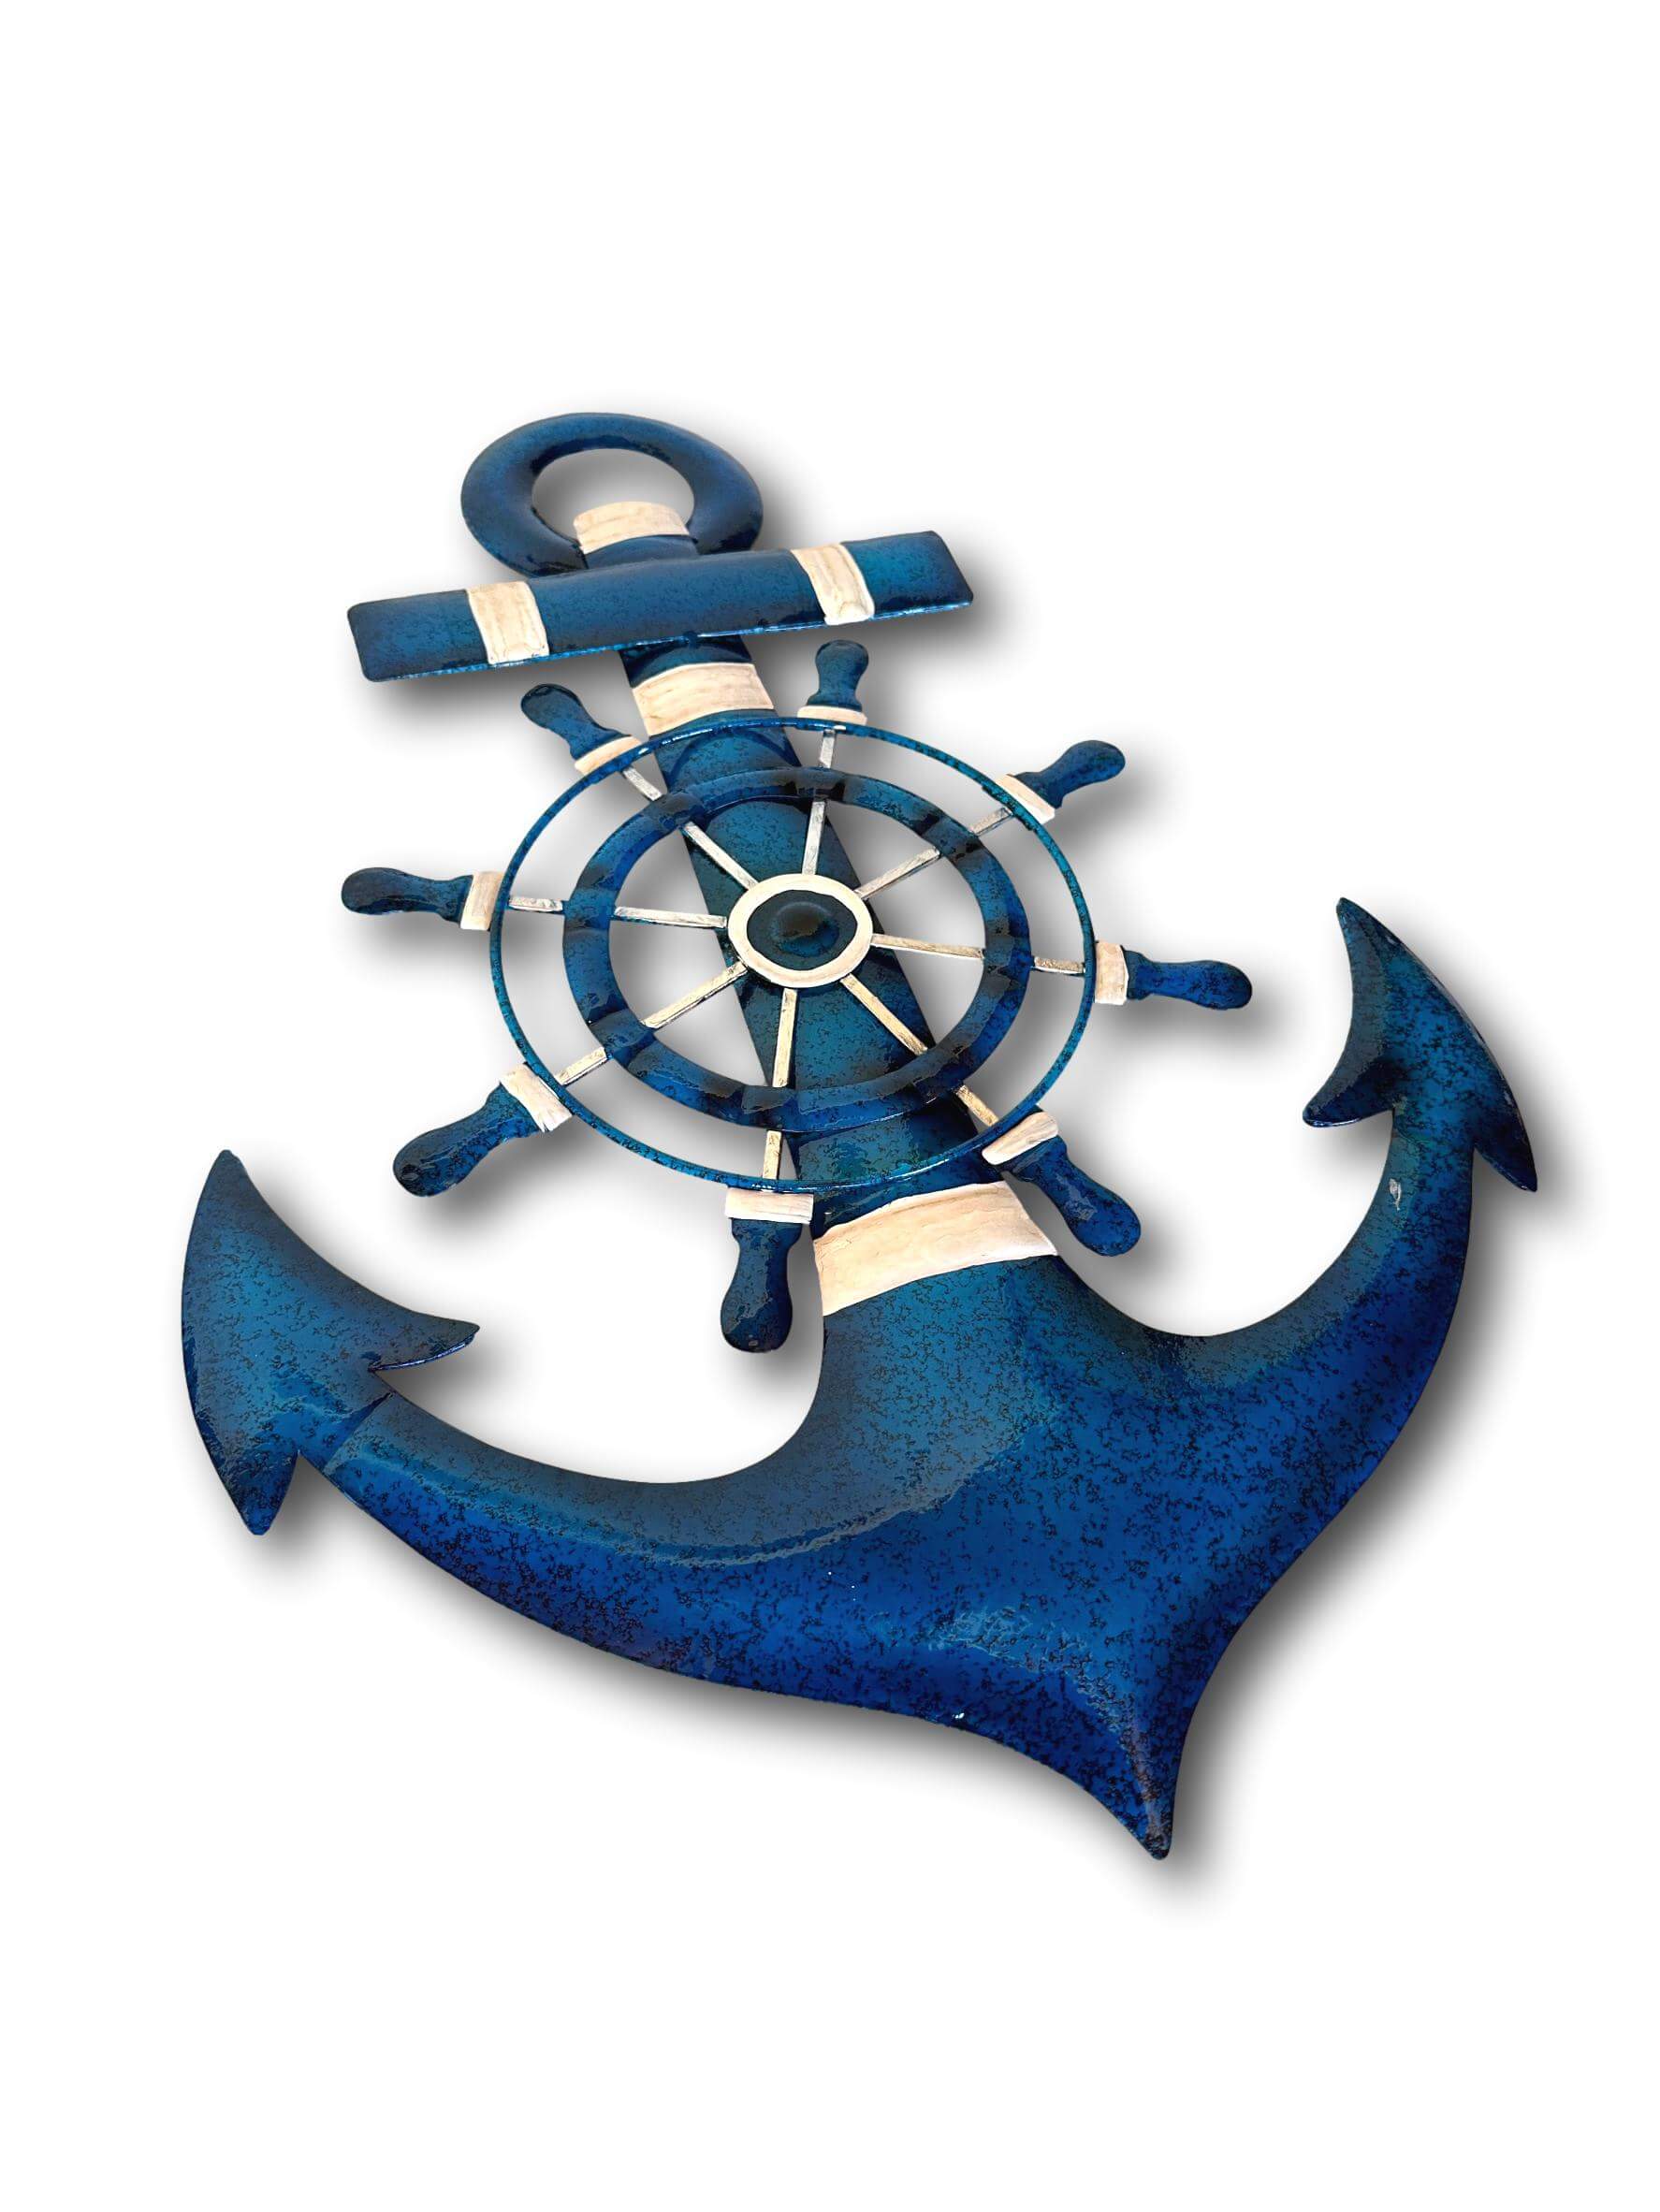 anchor artwork